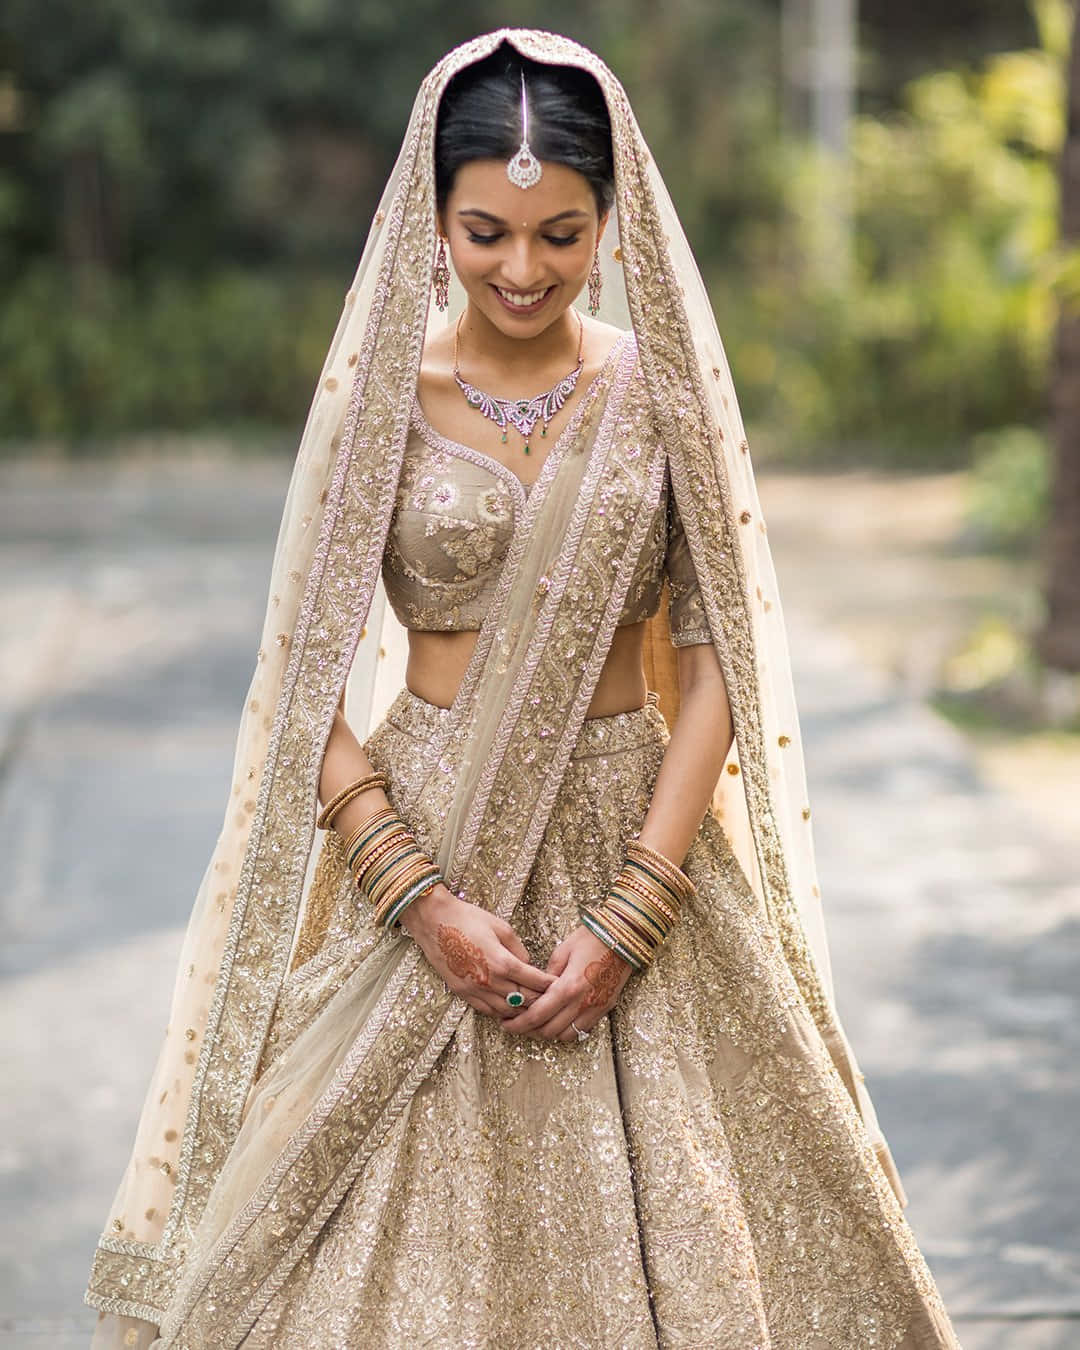 Bildeiner Indischen Braut In Goldenem Kleid